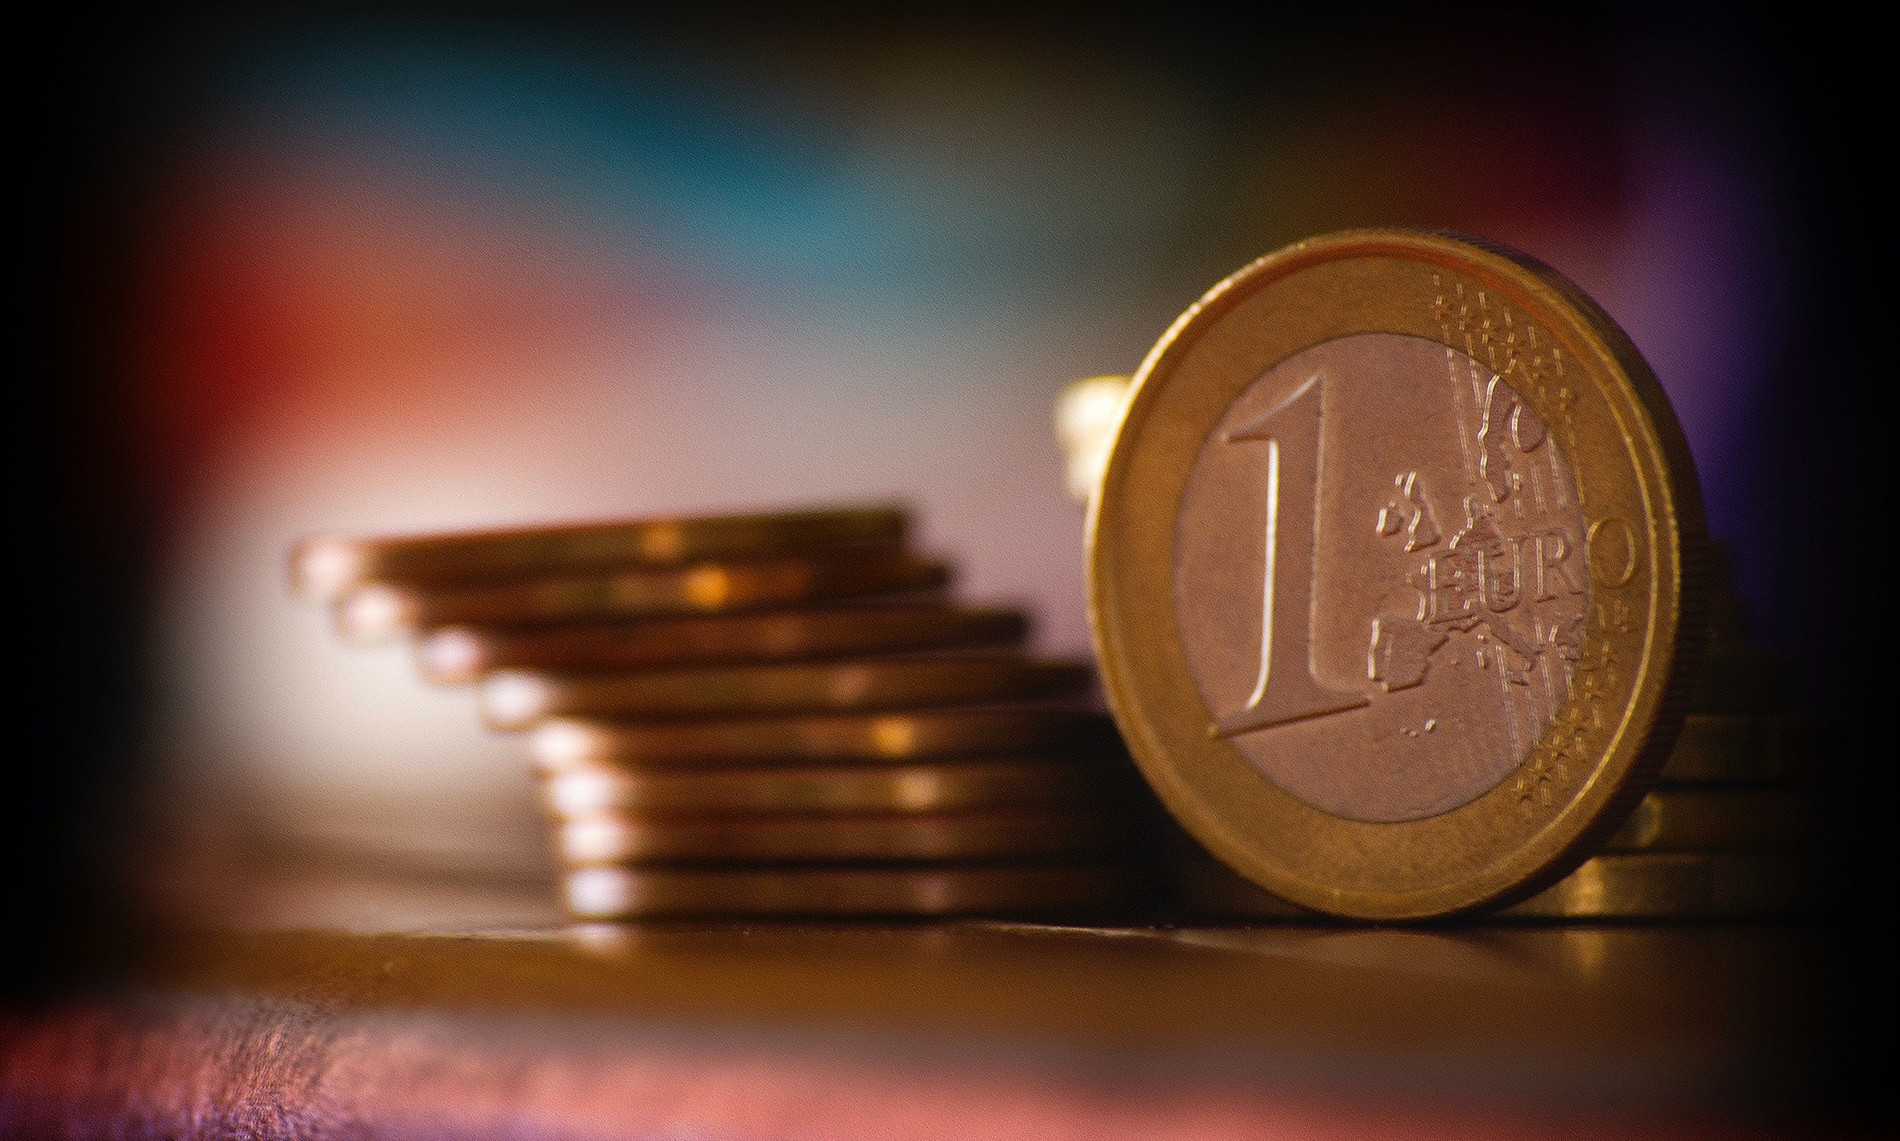 Das Bild zeigt einen Stapel aus 1-Euro-Münzen. Es soll eine Assoziation mit den Themen Finanzen, Überschuldung und Schuldnerberatung hergestellt werden.